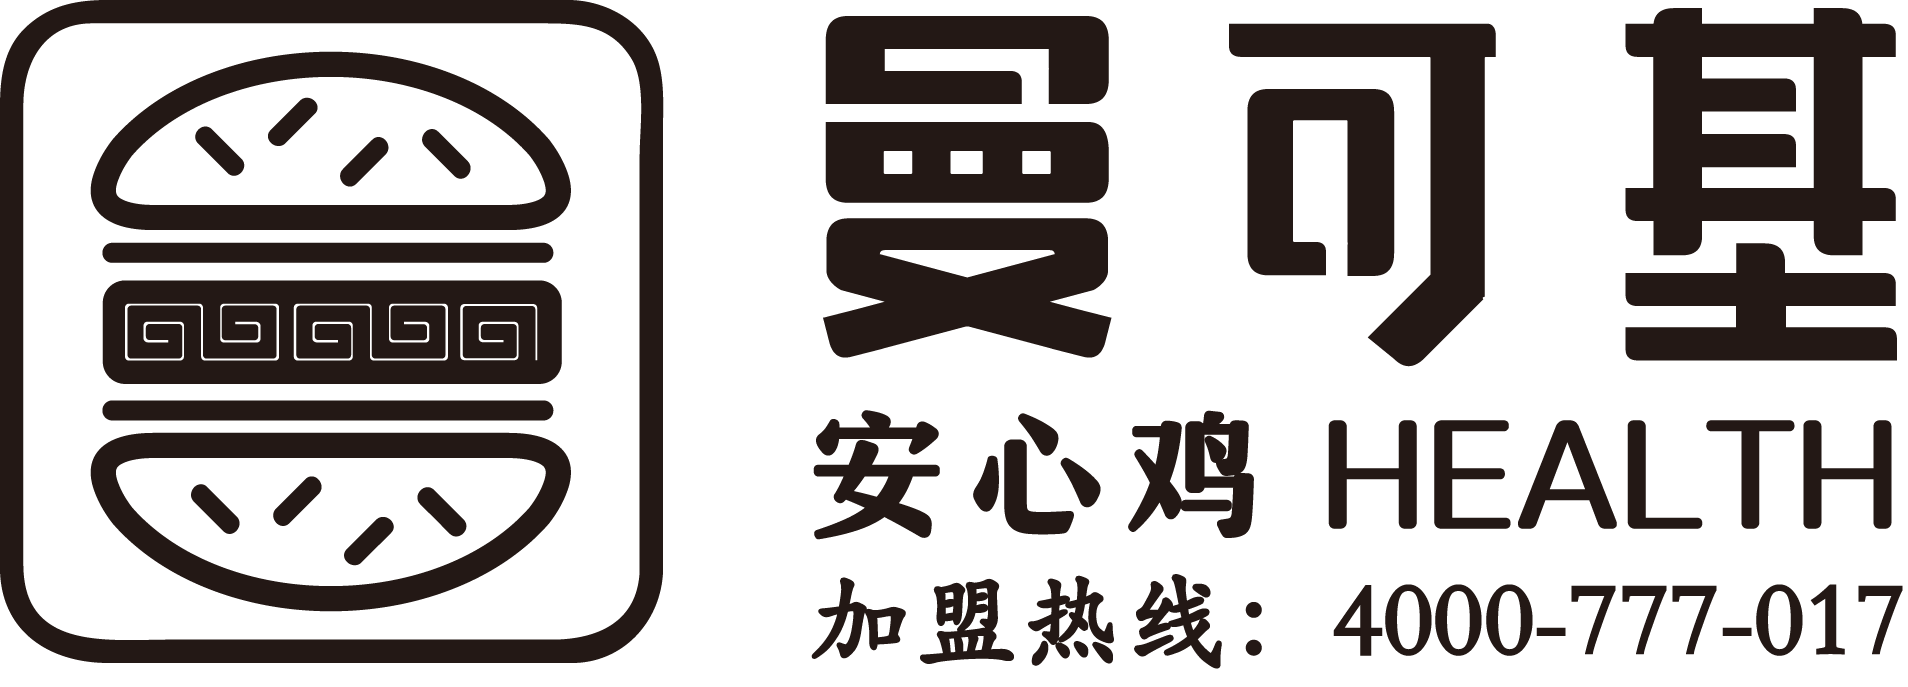 曼可基logo 单色2.png